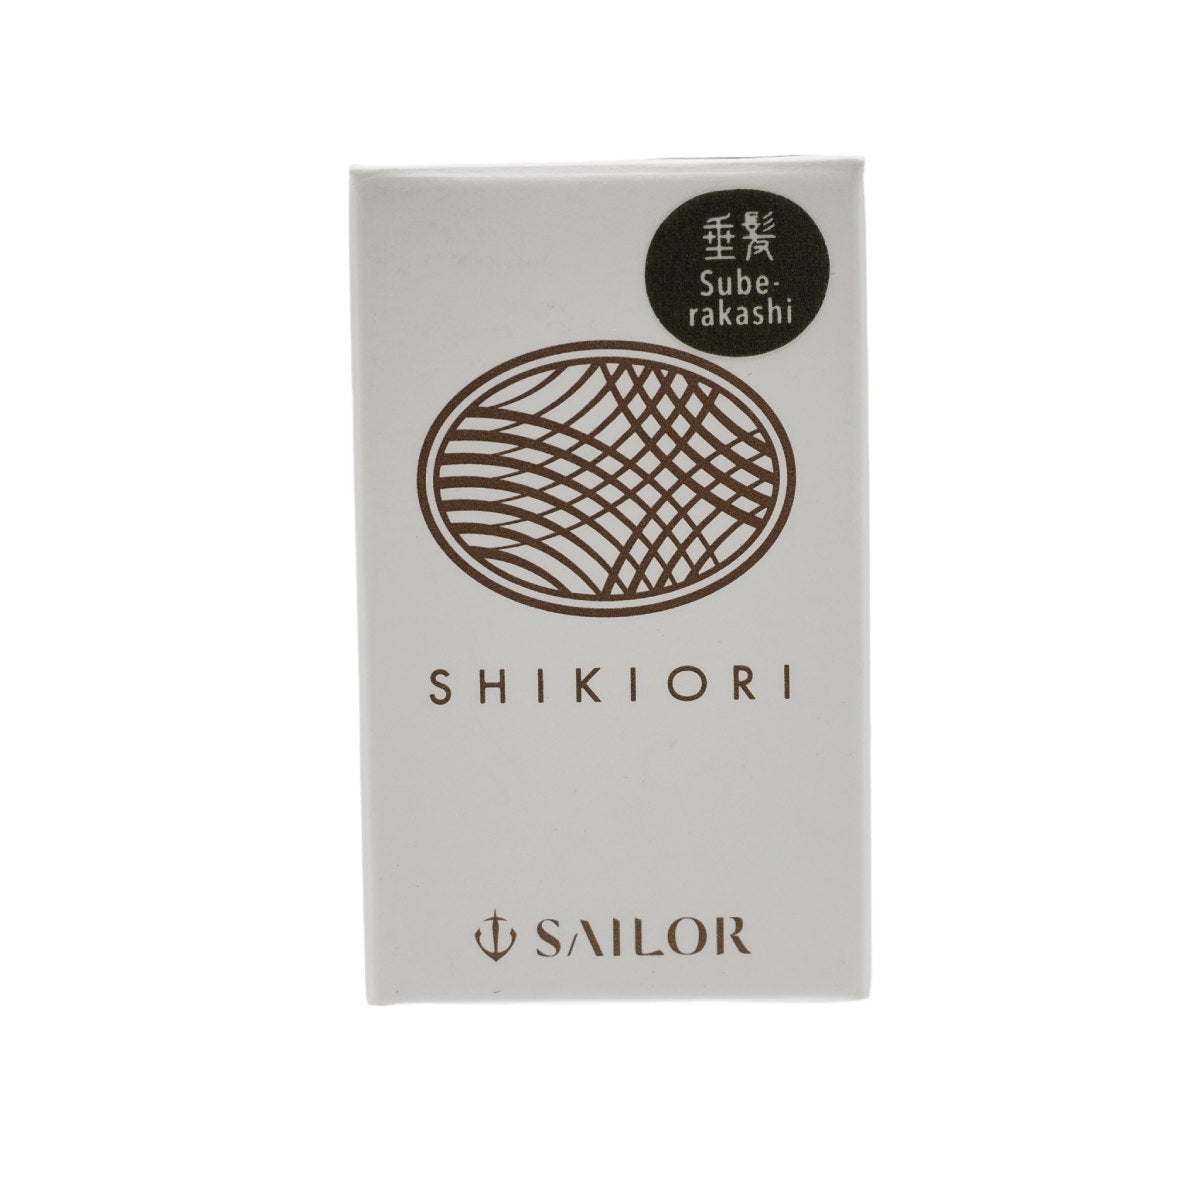 Sailor Shikiori - Suberakashi